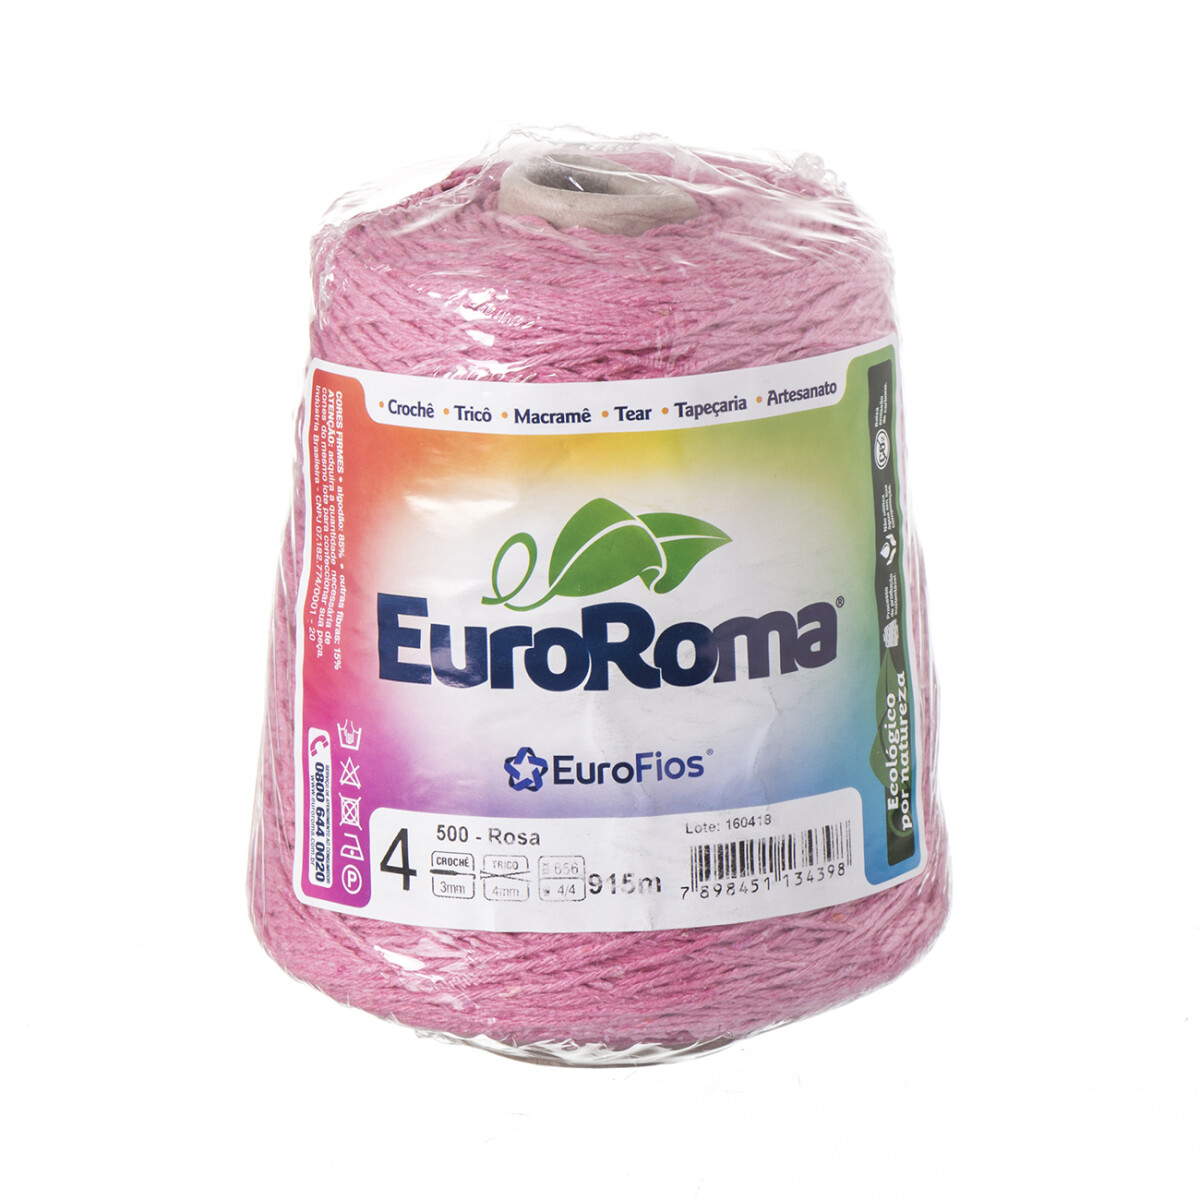 Euroroma algodón Colorido manualidades - rosa 